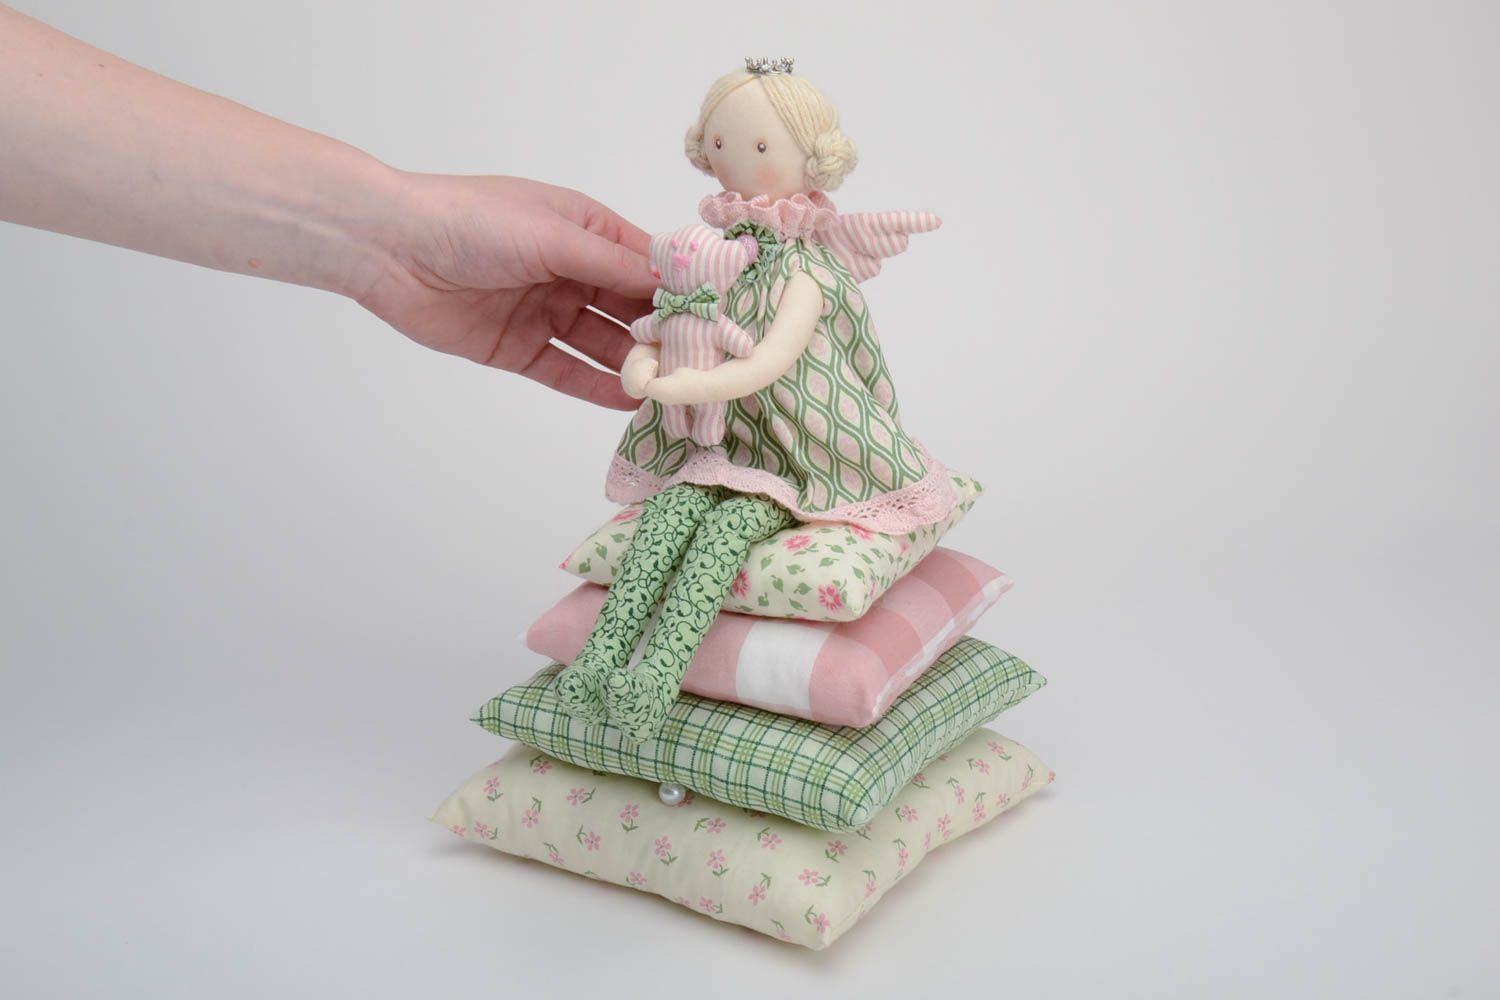 Авторская кукла из хлопка мягкая хэнд мэйд Девочка на подушках с мишкой в руках фото 5